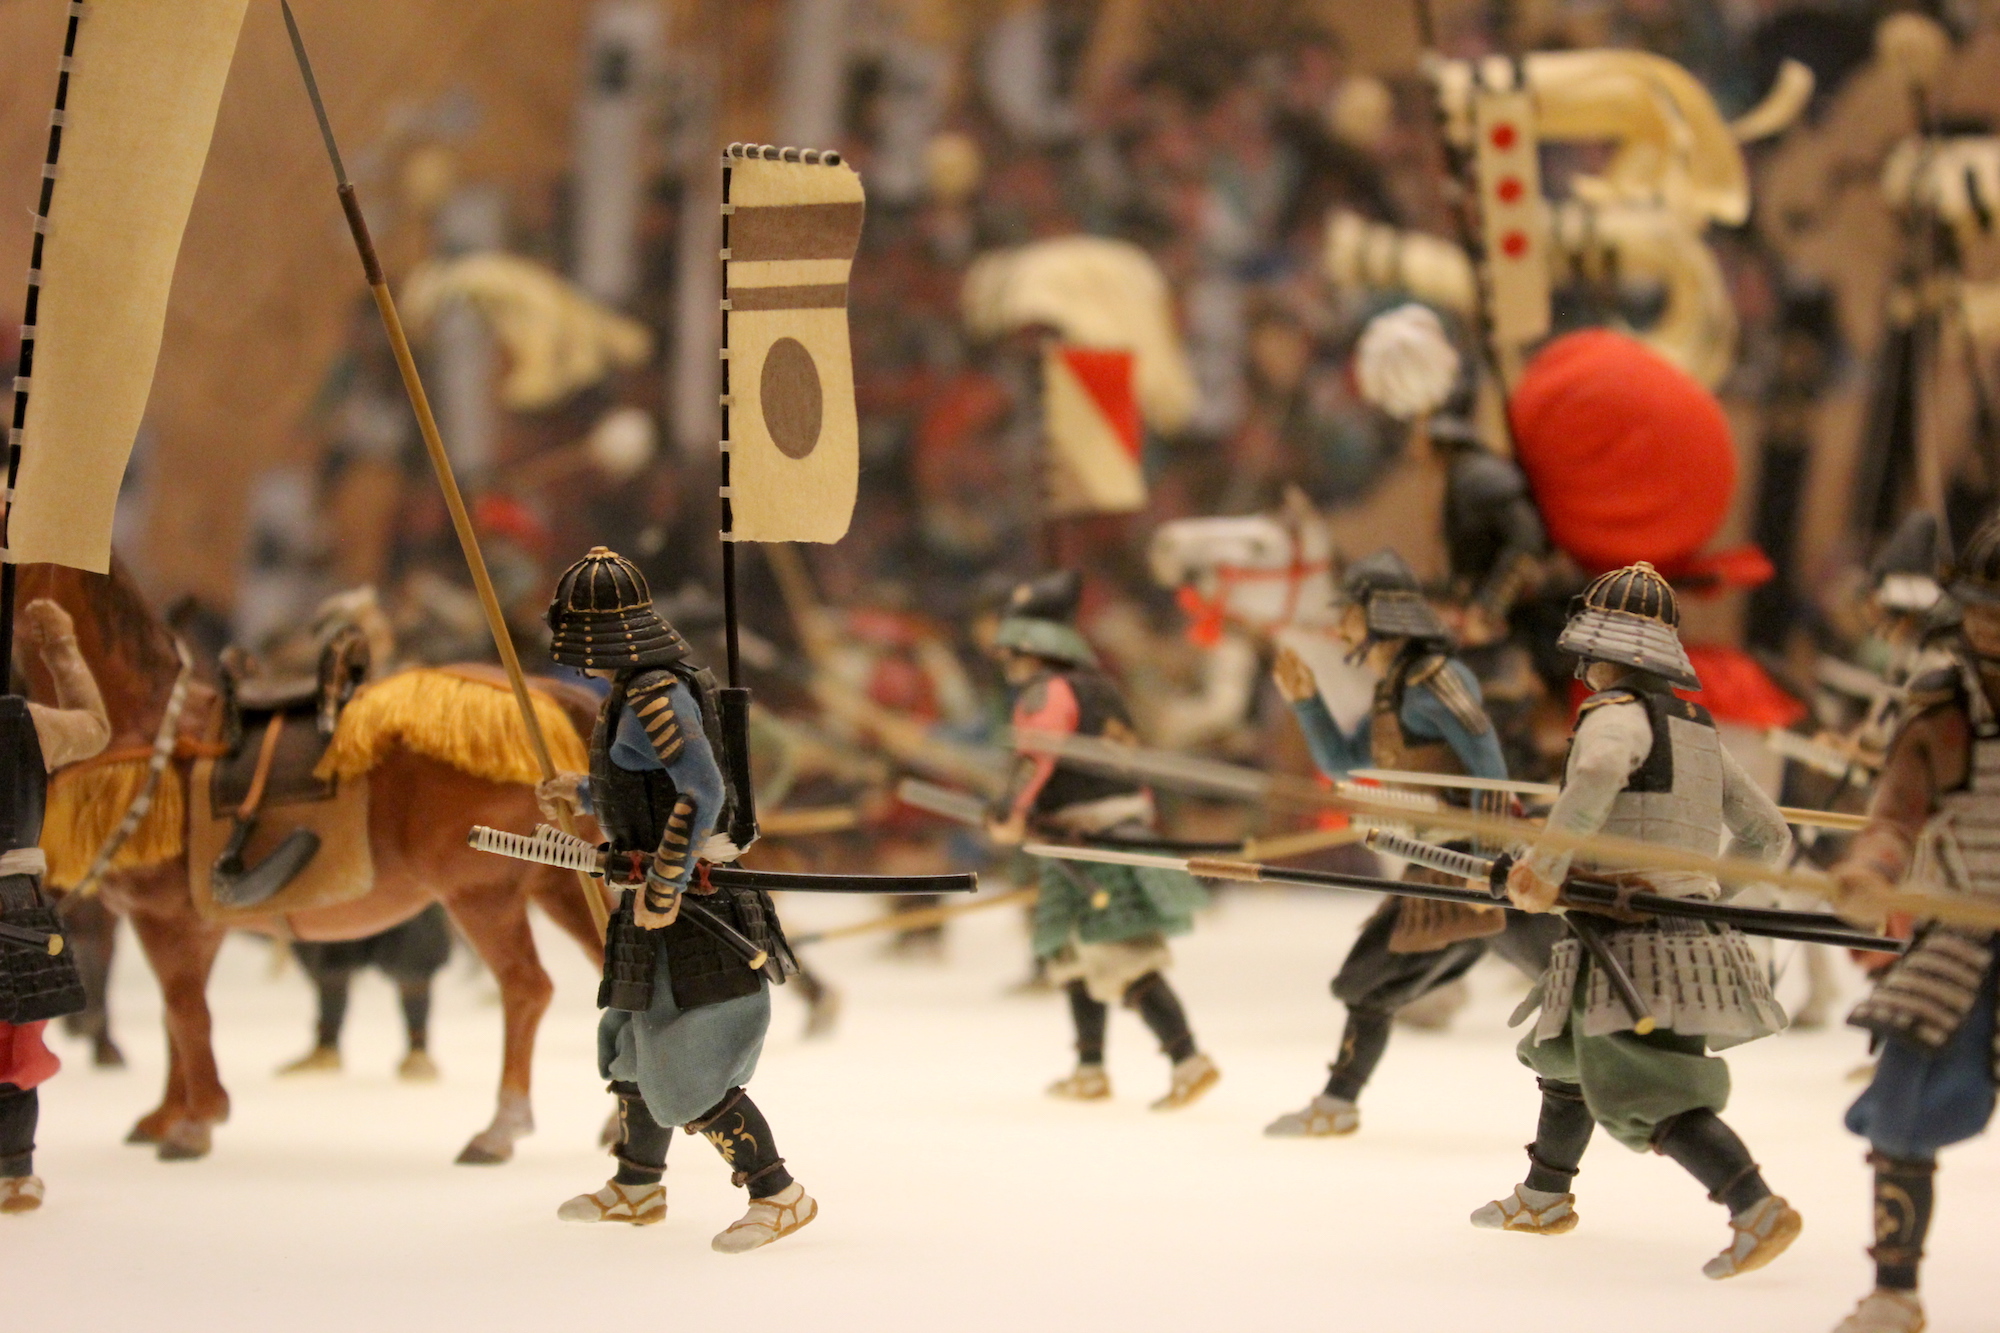 Samurai figurines